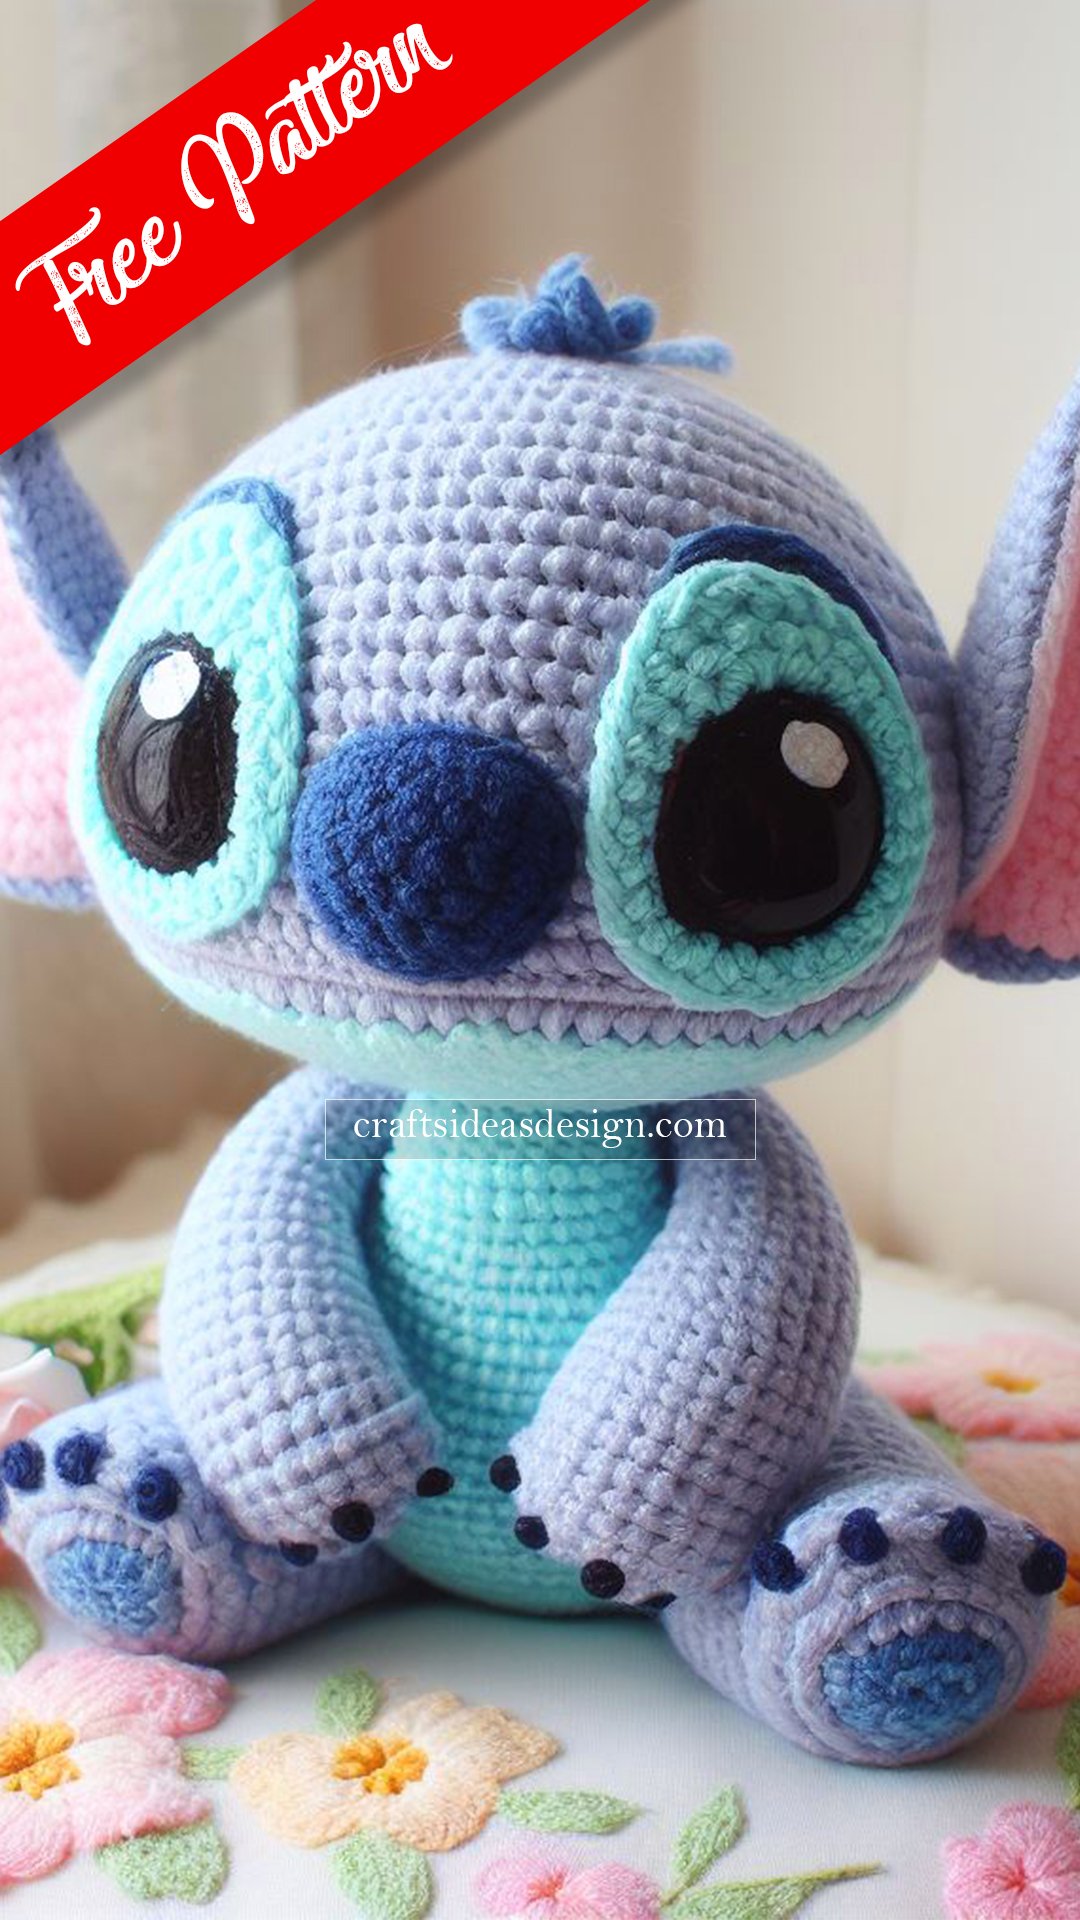 Disney Crochet: Amigurumi Disney Characters - Cute Pattern For